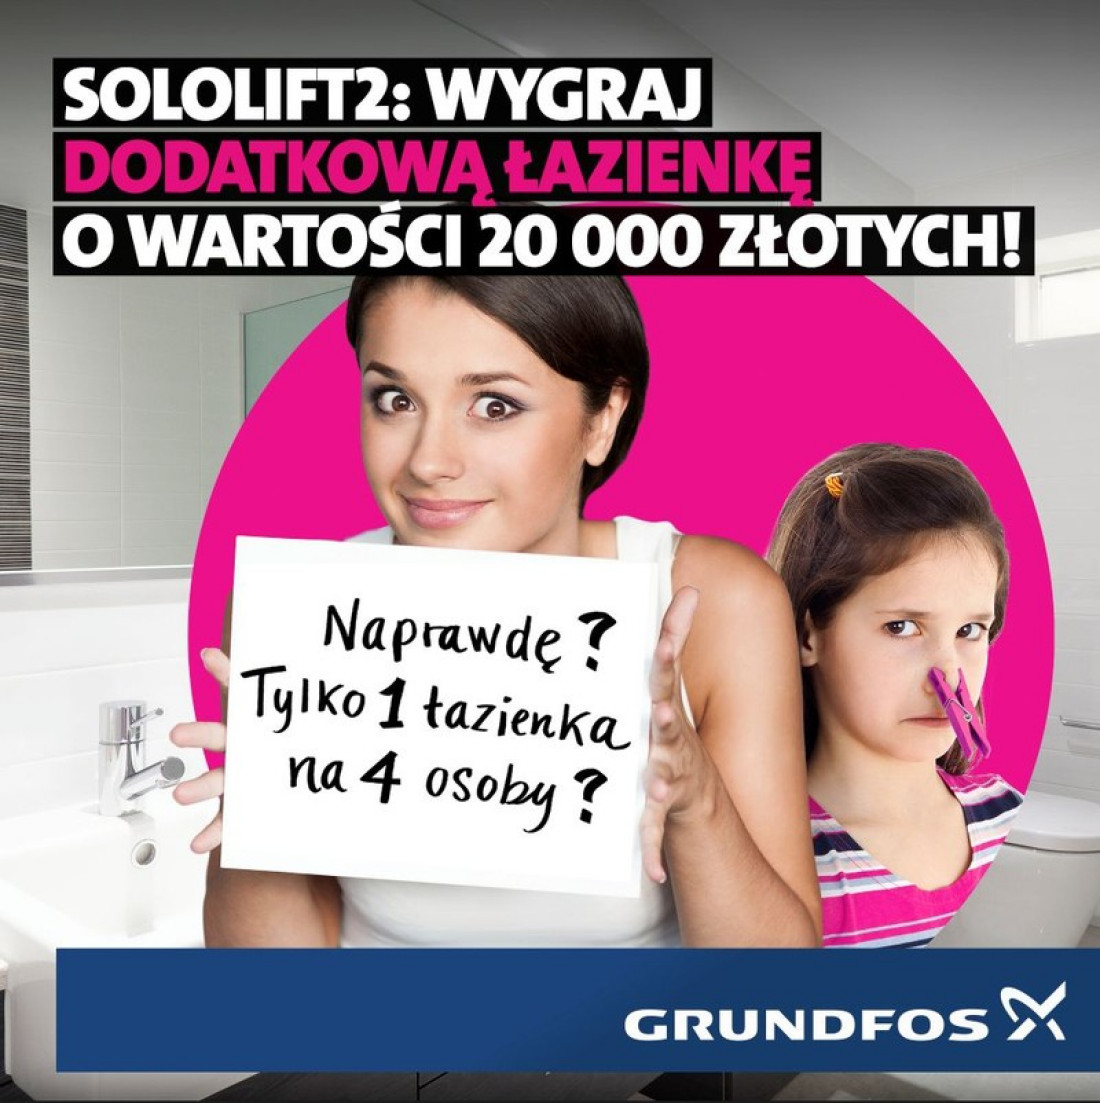 Wygraj dodatkową łazienkę z SOLOLIFT2 o wartości 20 000 zł